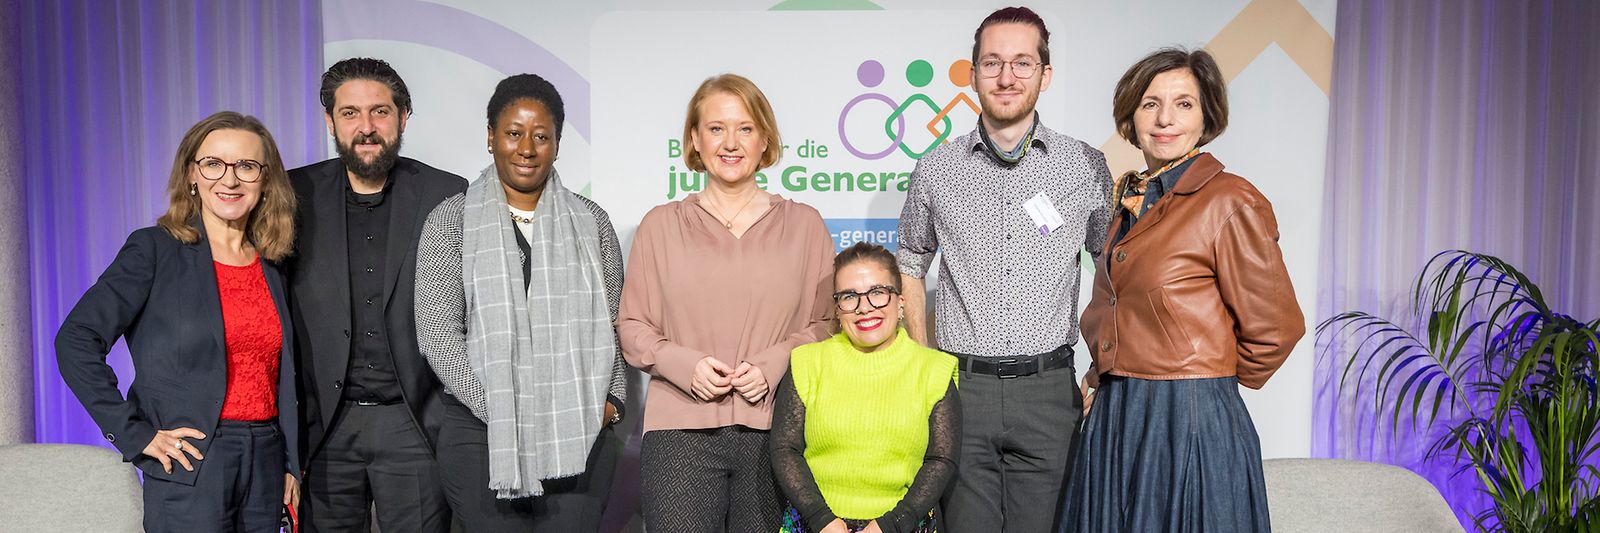 Lisa Paus mit Mitgliedern des "Bündnisses für die junge Generation" beim ersten Jahrestreffen in Berlin.